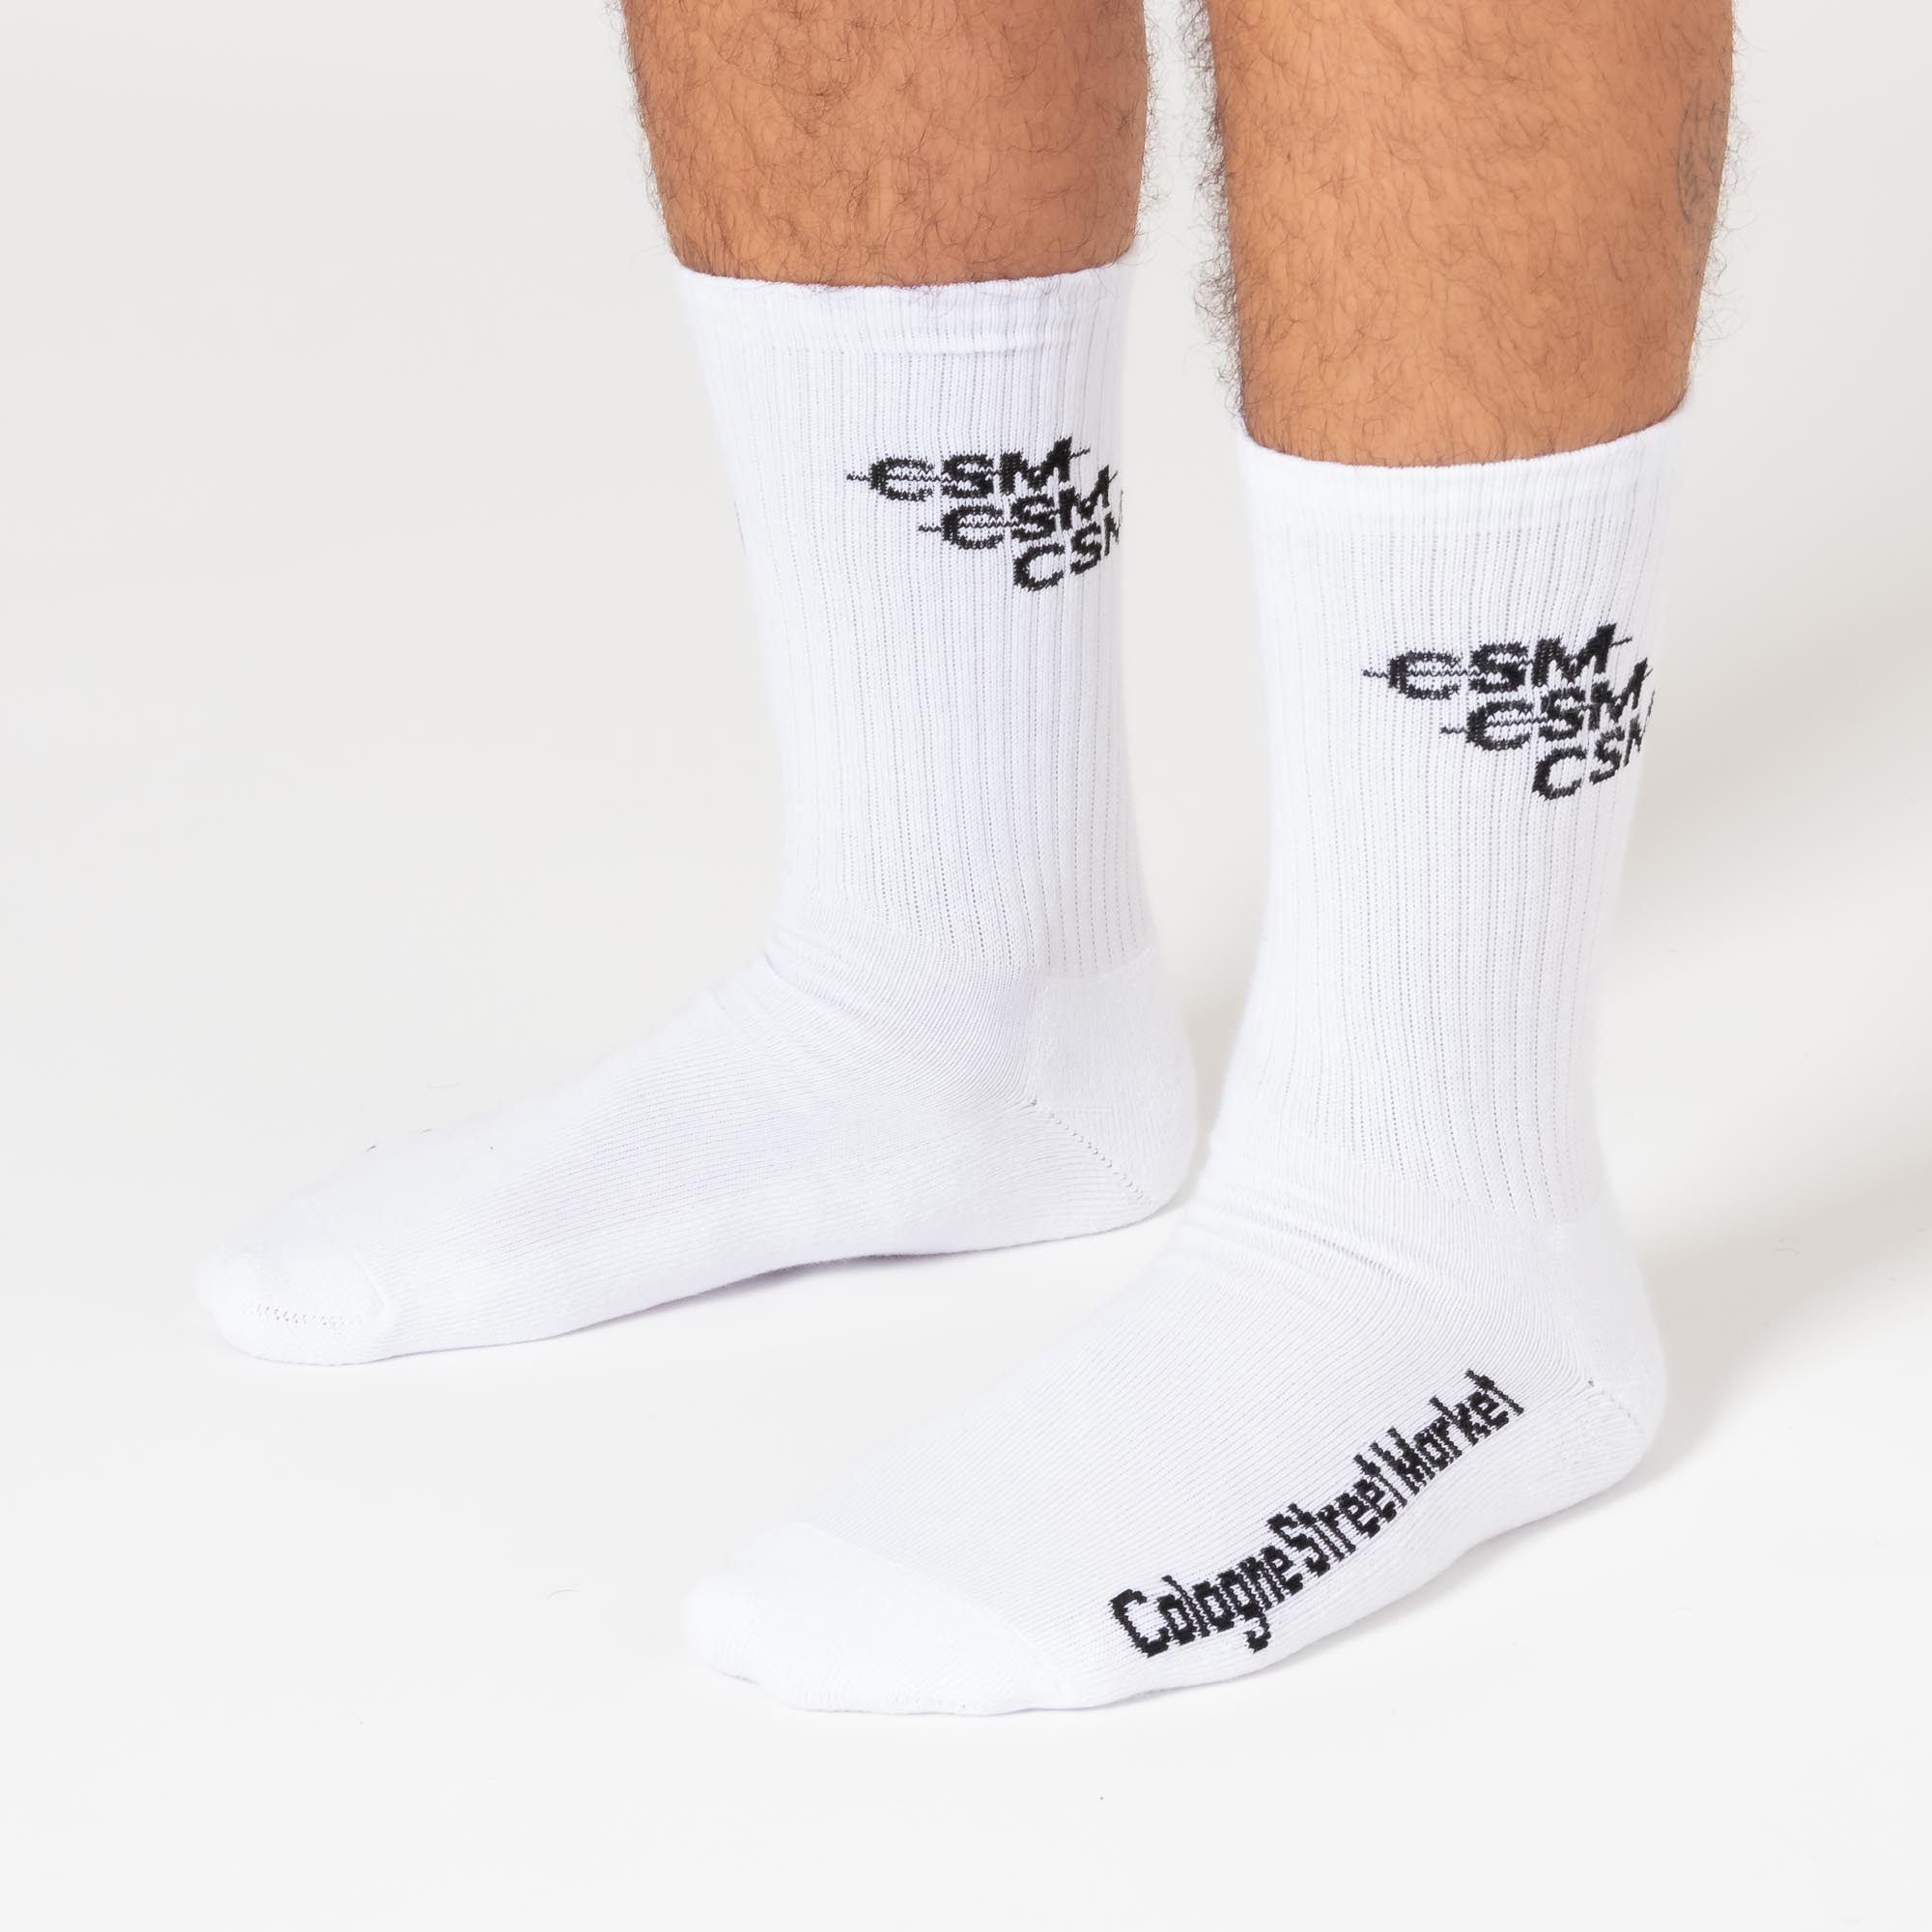 CSM Crew Collection II Socken 1 Kopie